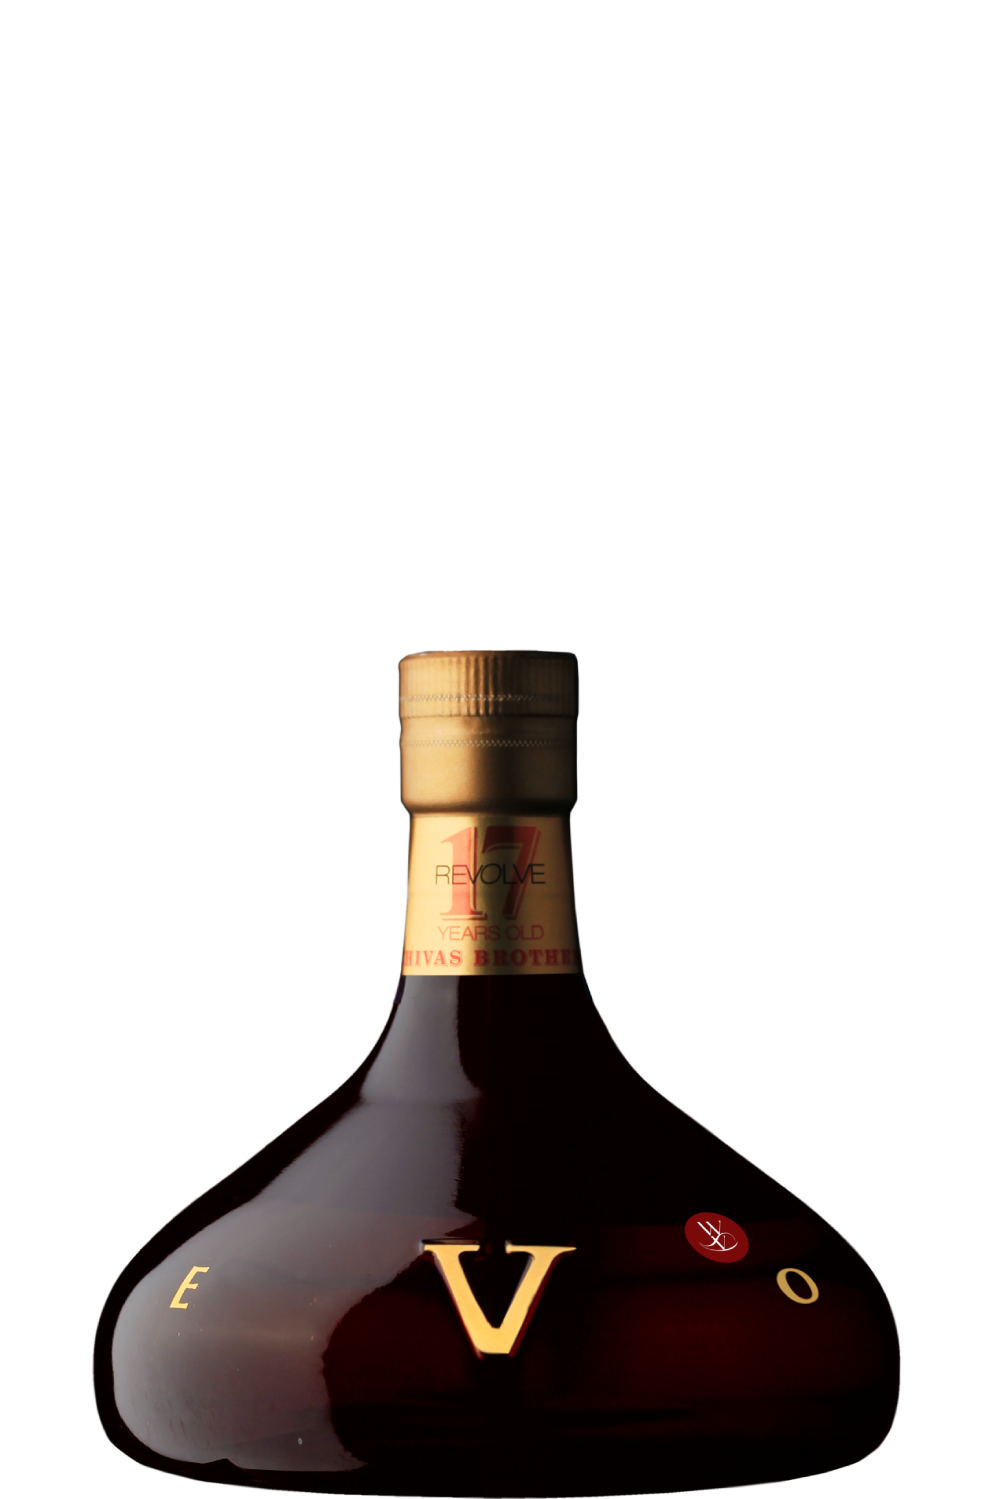 WineVins Whisky Chivas Revolve 17 Anos